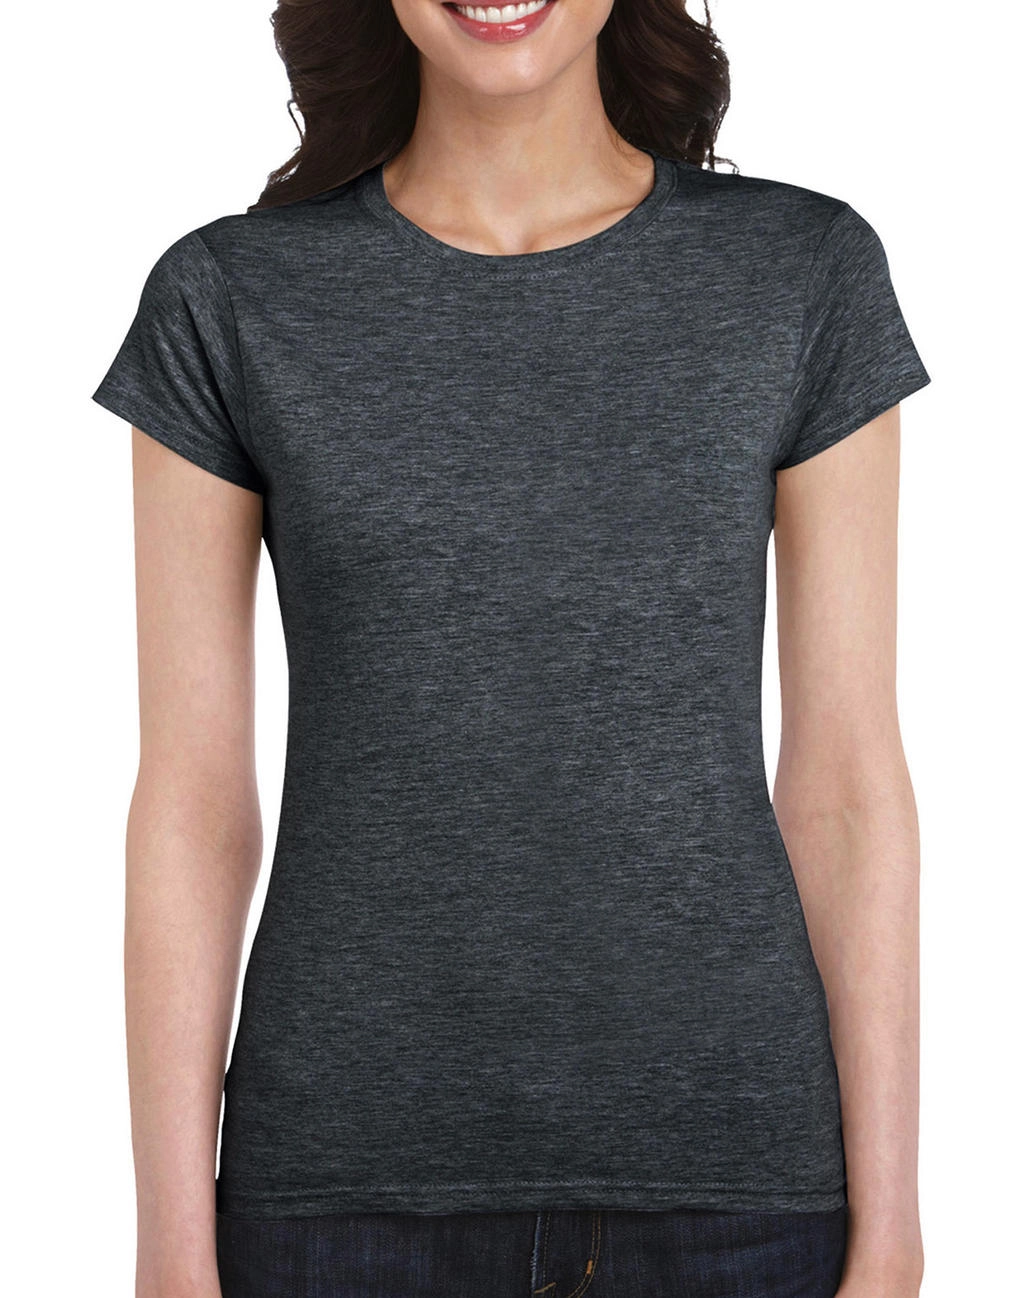 Softstyle® Ladies` T-Shirt zum Besticken und Bedrucken in der Farbe Dark Heather mit Ihren Logo, Schriftzug oder Motiv.